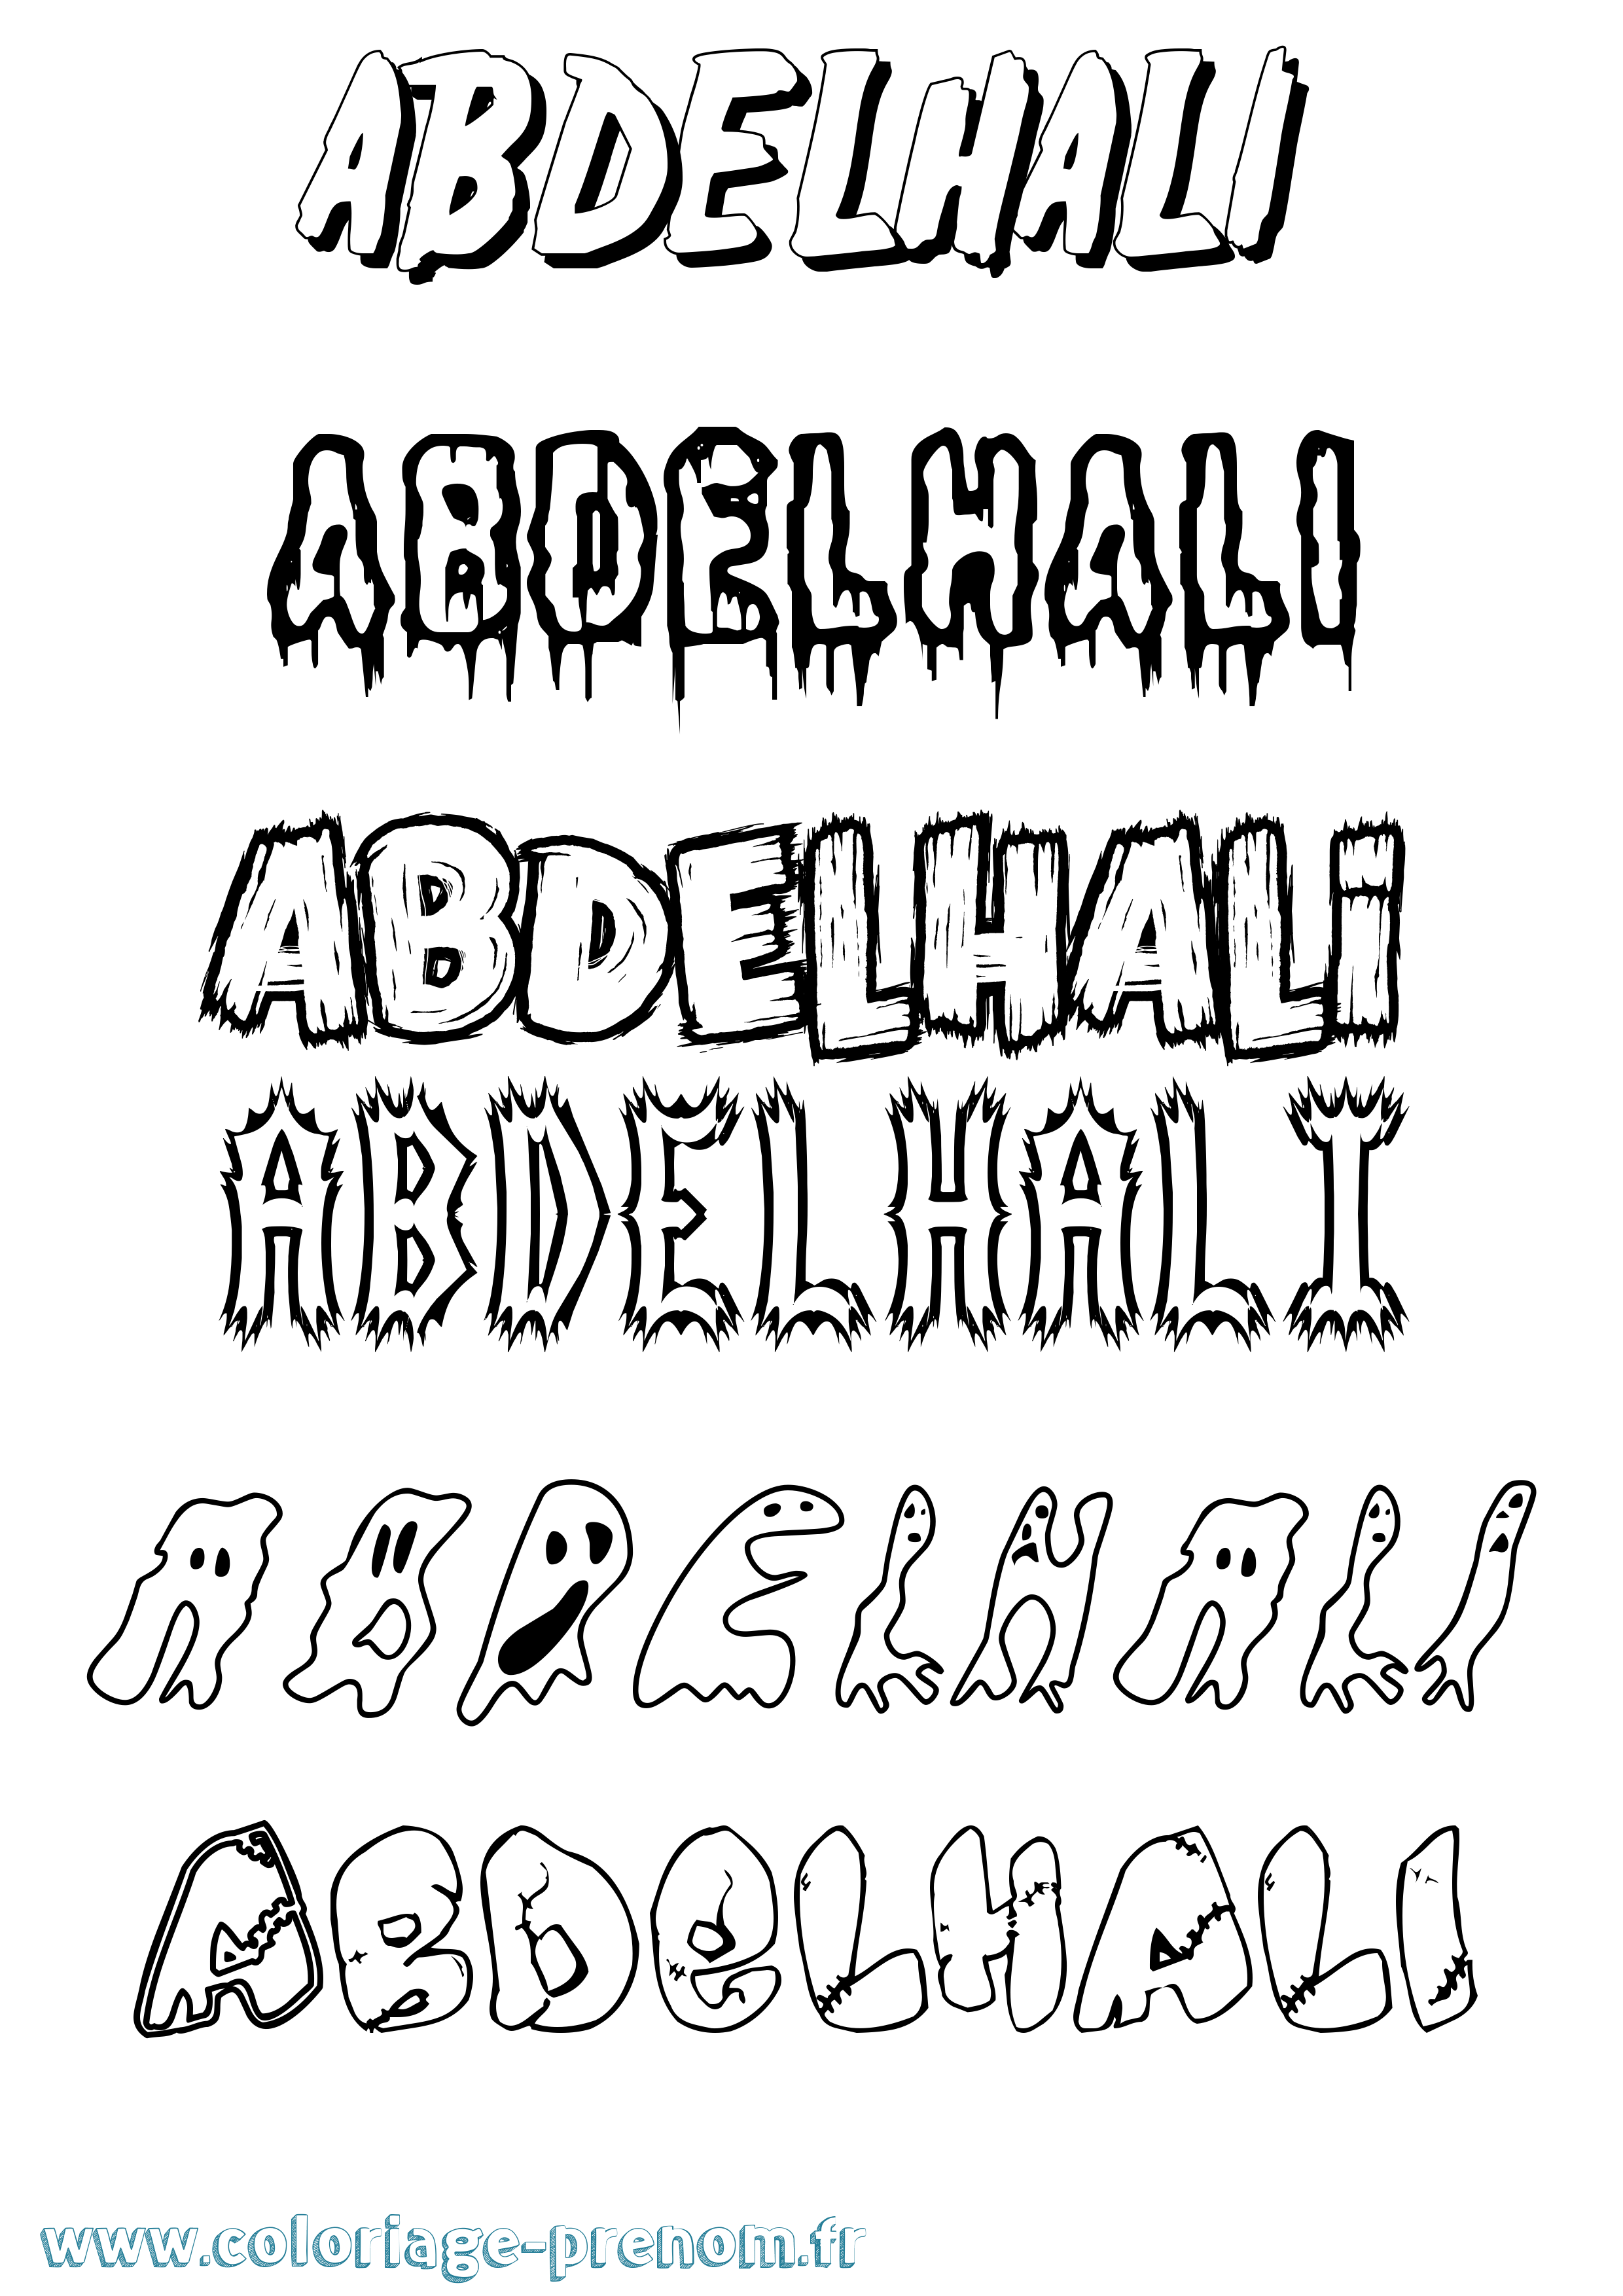 Coloriage prénom Abdelhali Frisson